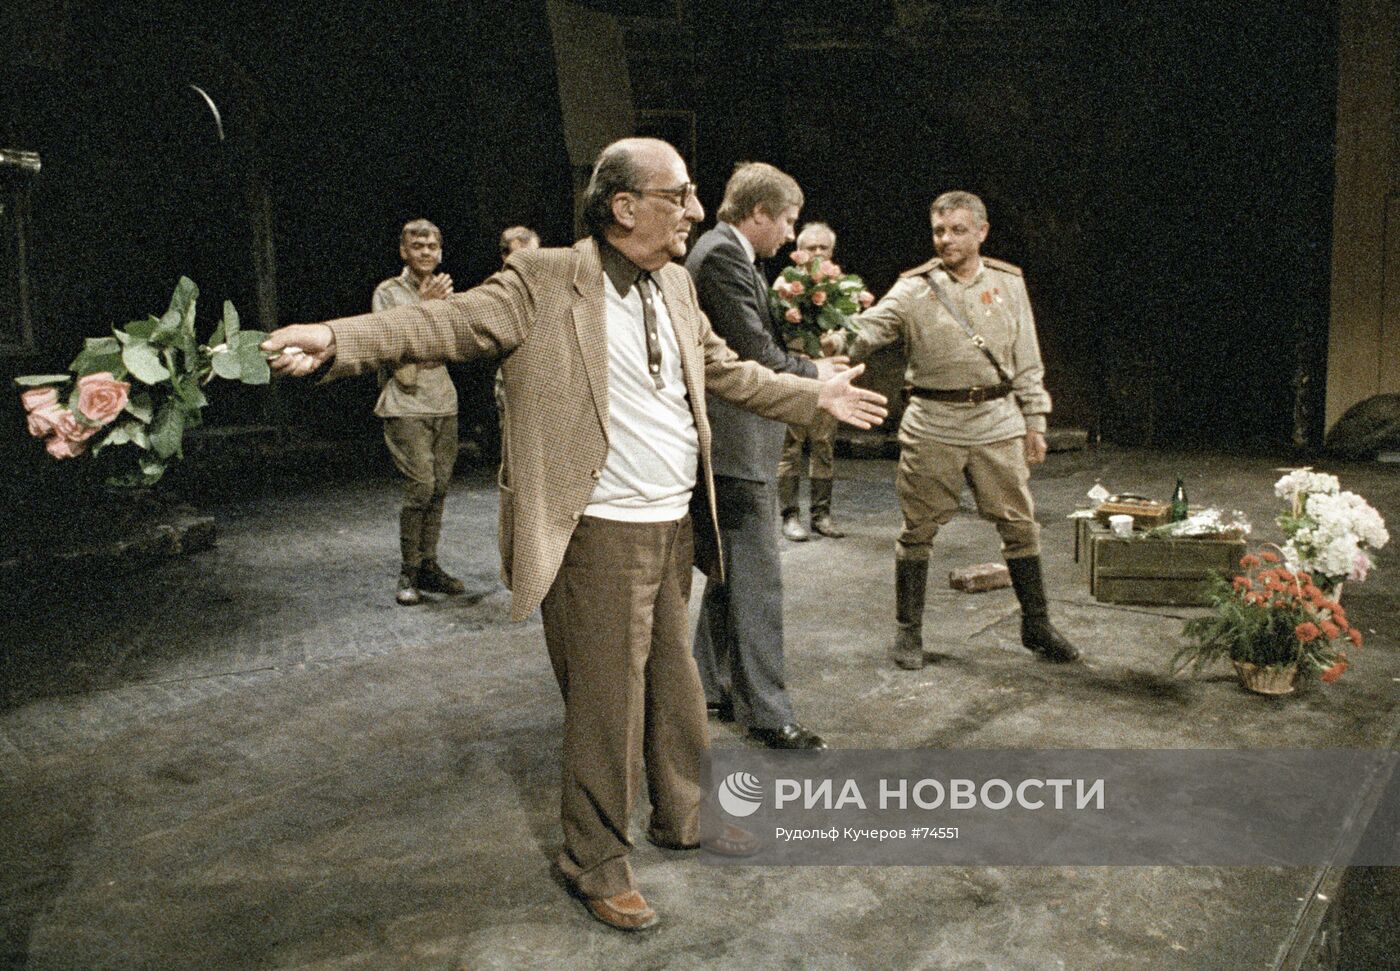 Г. Товстоногов и К. Лавров после премьеры спектакля "Рядовые"